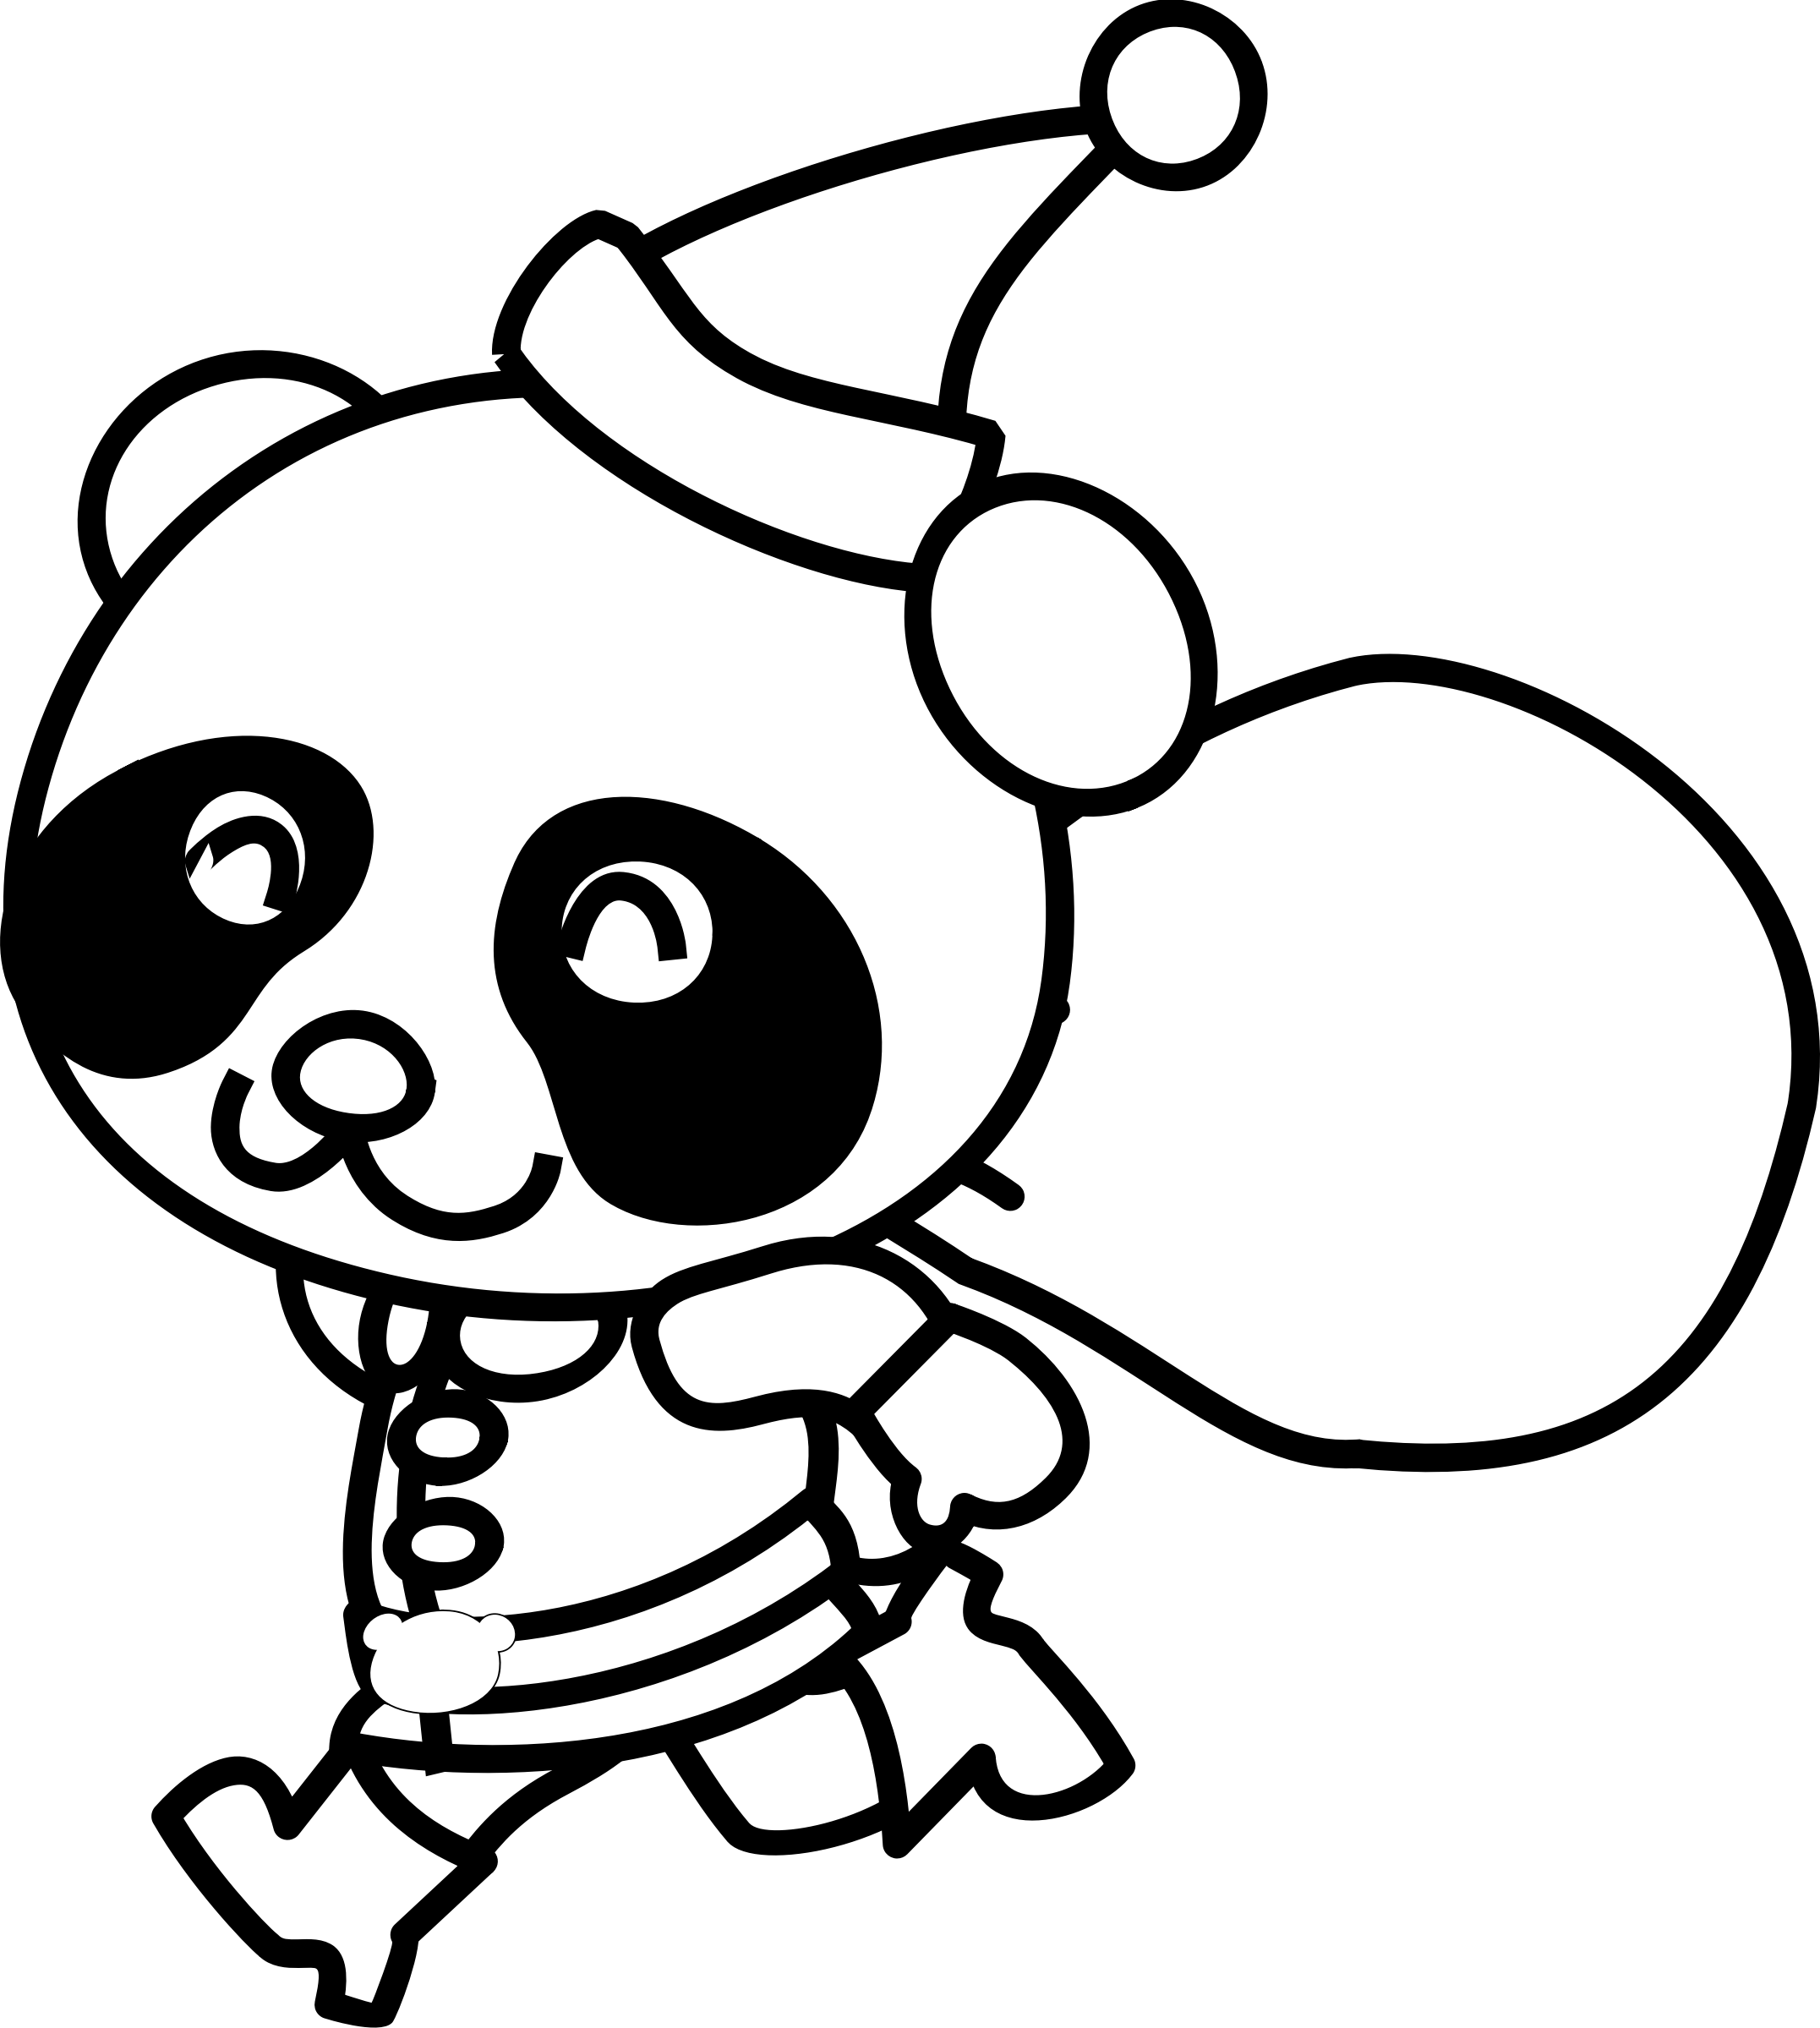 Santa panda big image. Couch clipart coloring page